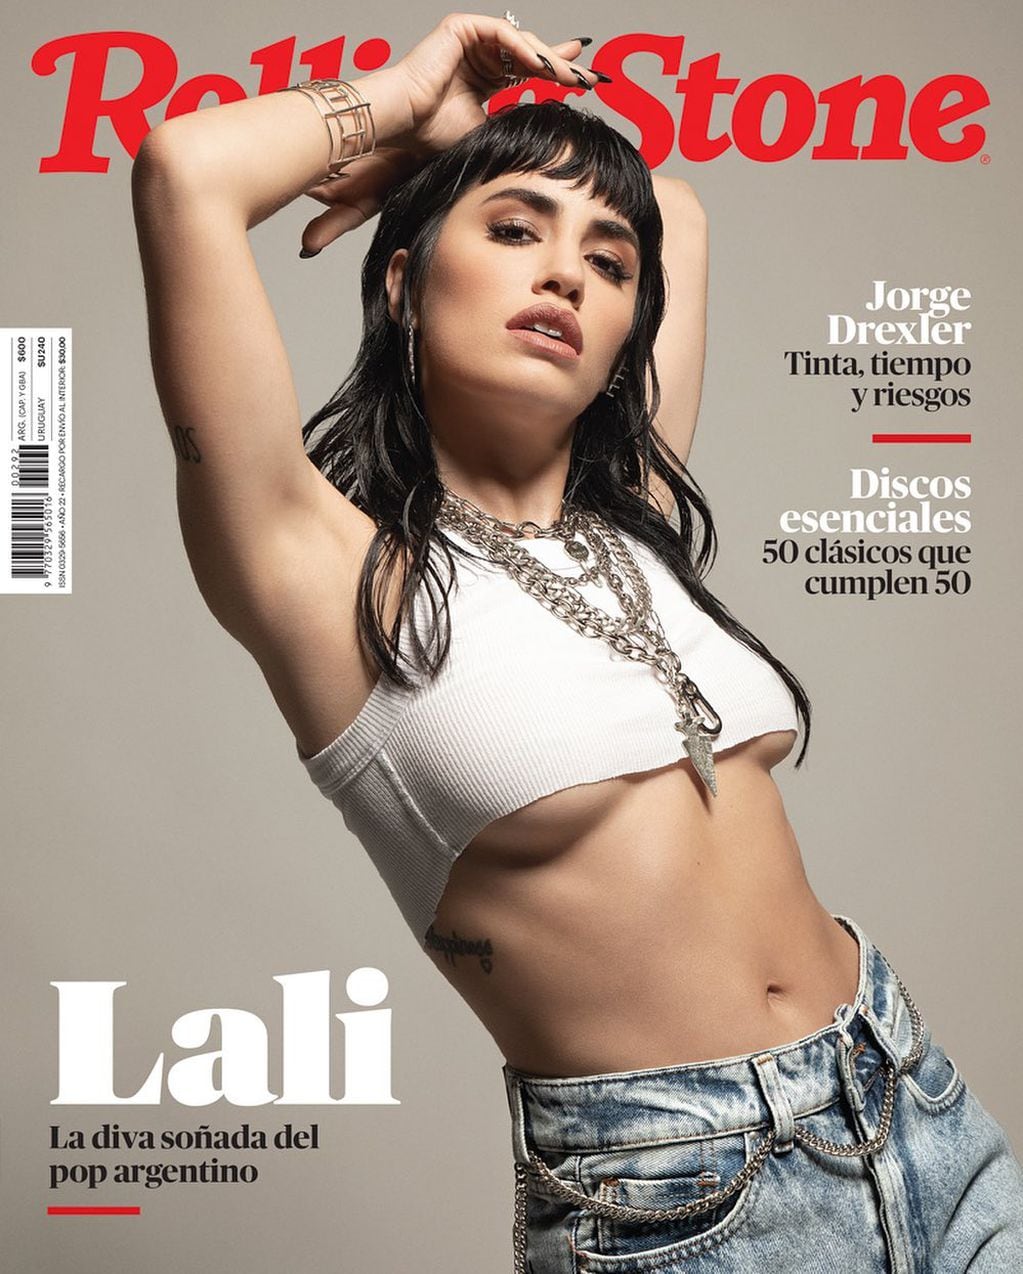 Lali Espósito posó para la revista Rolling Stone.